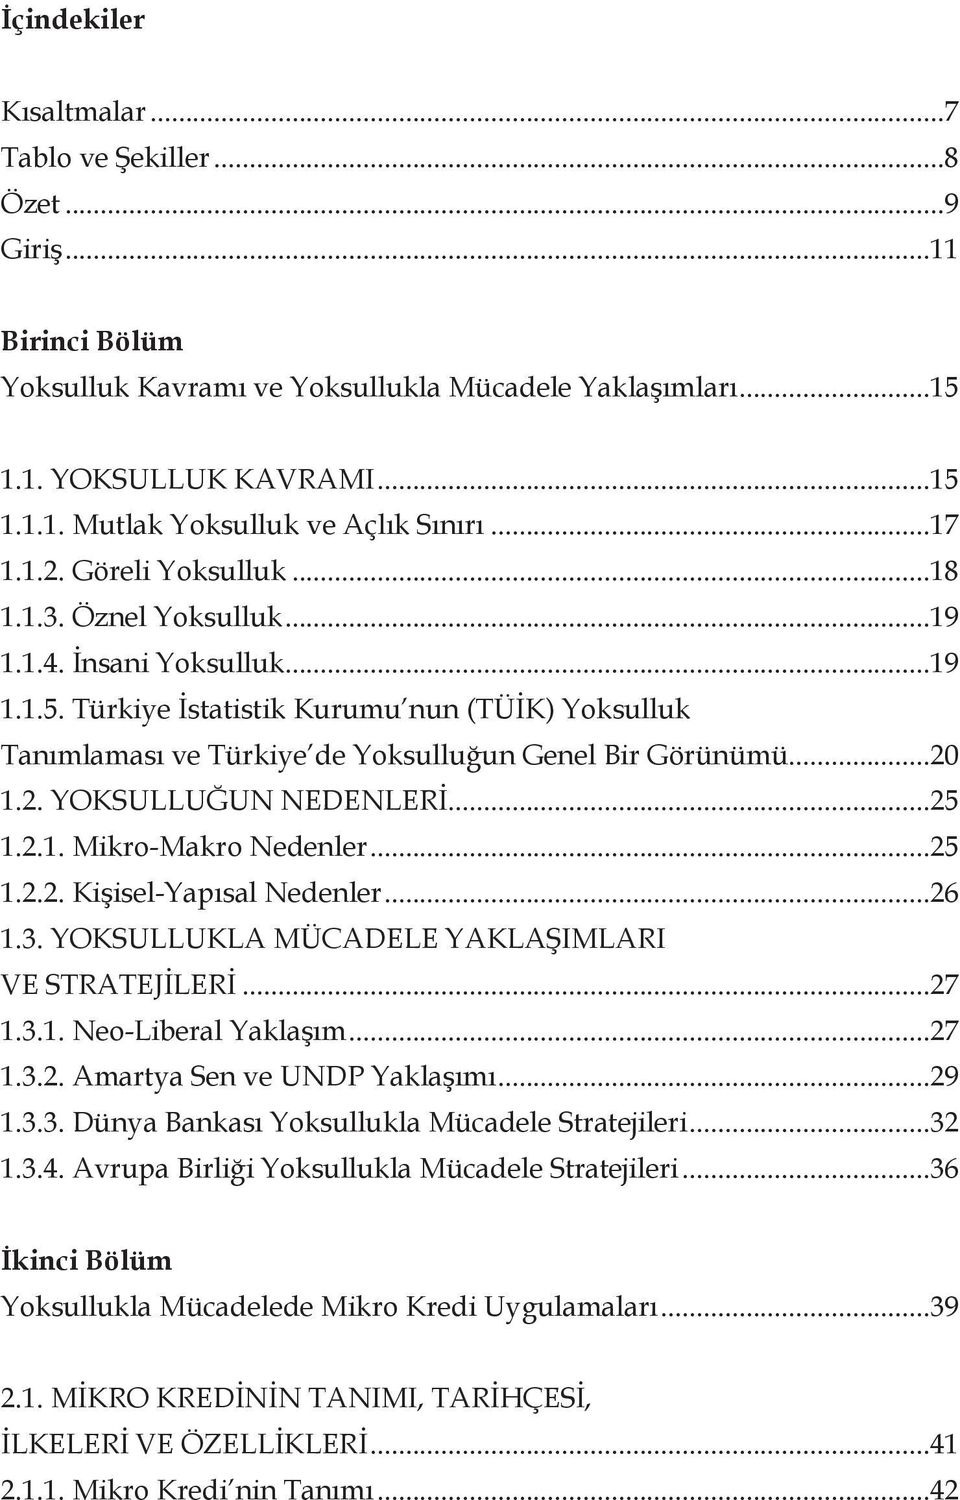 Türkiye İstatistik Kurumu nun (TÜİK) Yoksulluk Tanımlaması ve Türkiye de Yoksulluğun Genel Bir Görünümü...20 1.2. YOKSULLUĞUN NEDENLERİ...25 1.2.1. Mikro-Makro Nedenler...25 1.2.2. Kişisel-Yapısal Nedenler.